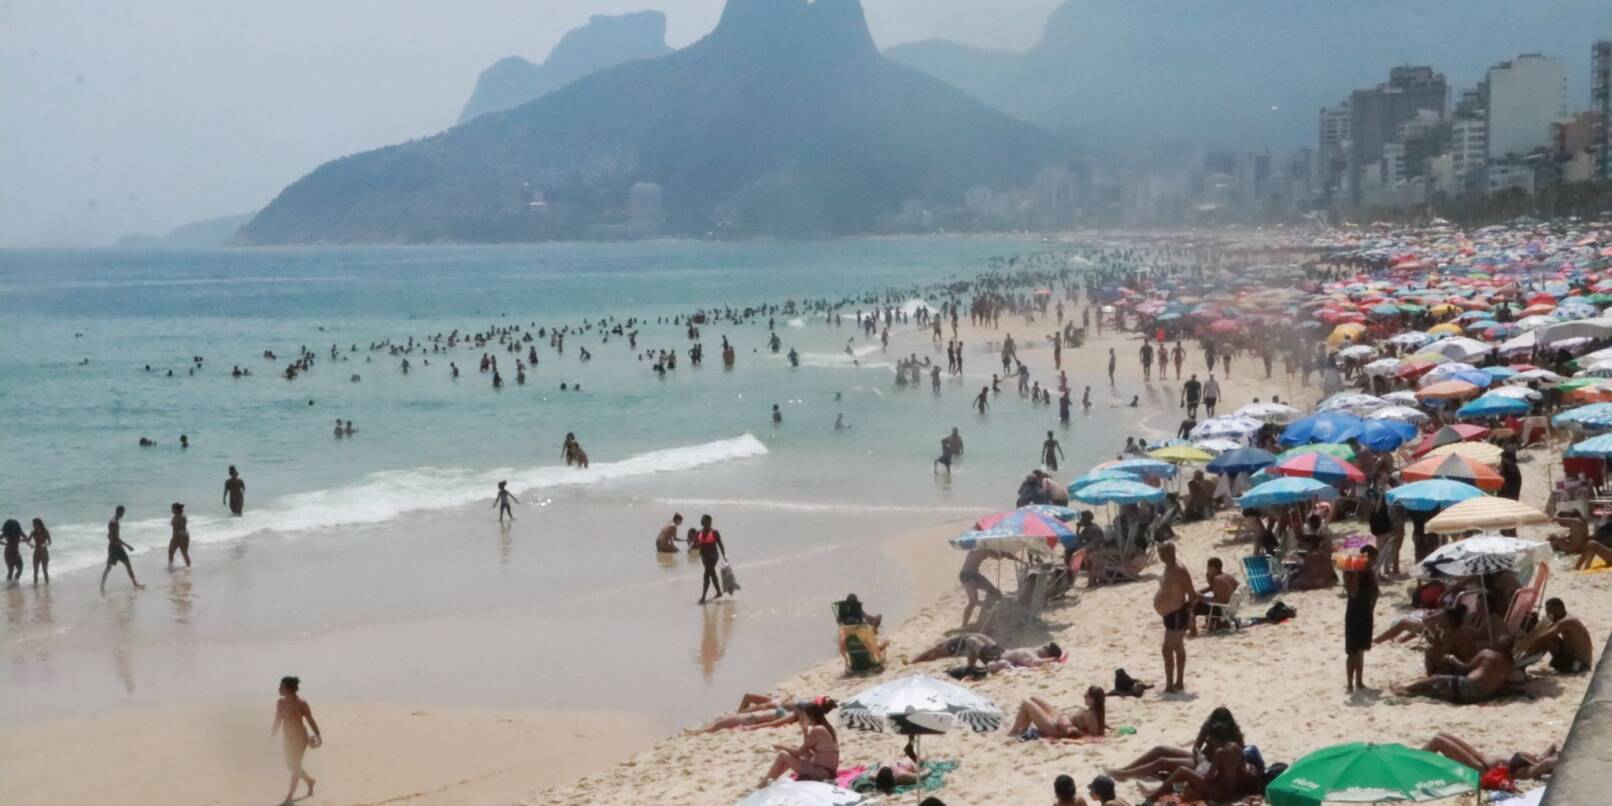 Besucher am Strand von Ipanema. Die Stadt Rio de Janeiro hatte jüngst mit 41,9 Grad Celsius erneut einen Hitzerekord gebrochen.